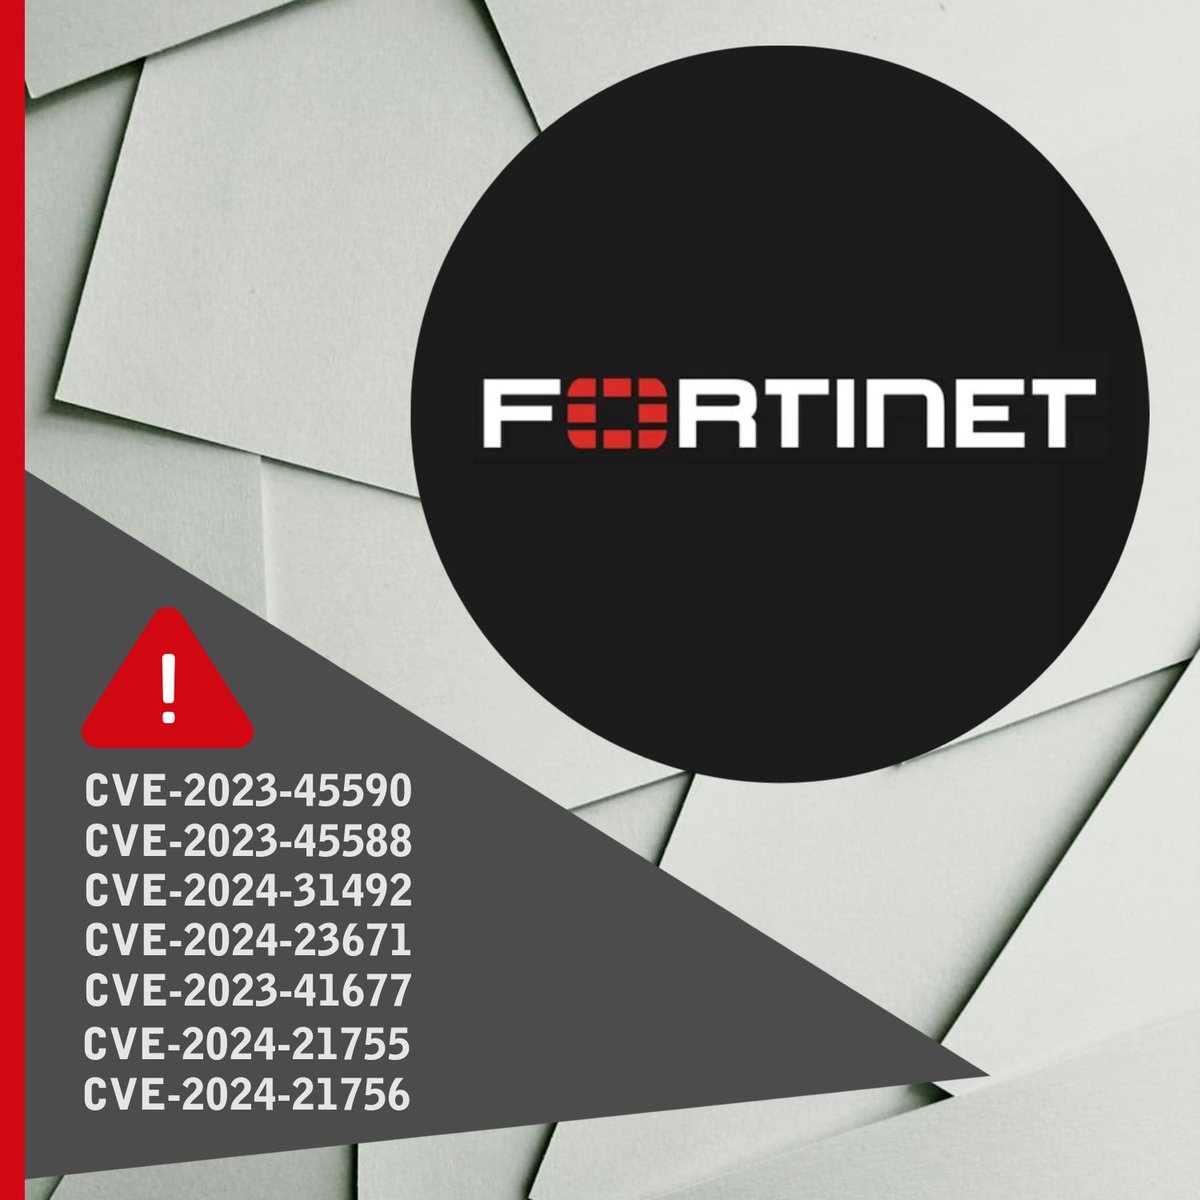 ⚠️Brīdinājums! Fortinet ir publicējis steidzamus drošības ieteikumus un atjauninājumus, kas palīdz novērst vairākas kritiskas ievainojamības uzņēmuma izstrādātajos produktos ➡ FortiClient (Linux un macOS), FortiSandbox, FortiOS un FortiProxy. Vairāk: cert.lv/lv/2024/04/vai…